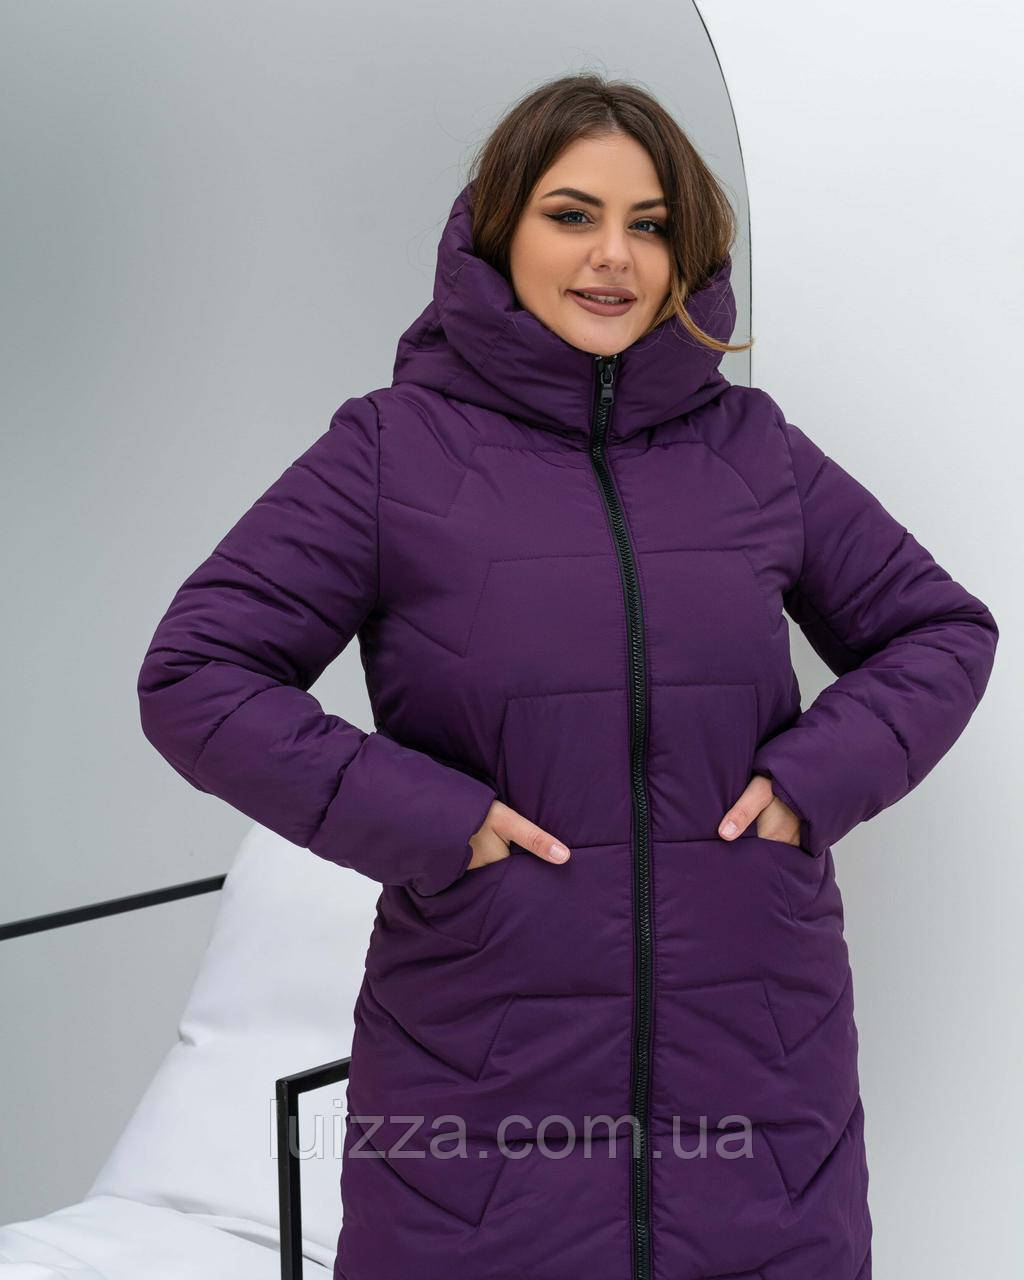 Зимова жіноча куртка подовжена вільного силуету 48-62р, фіолетовий